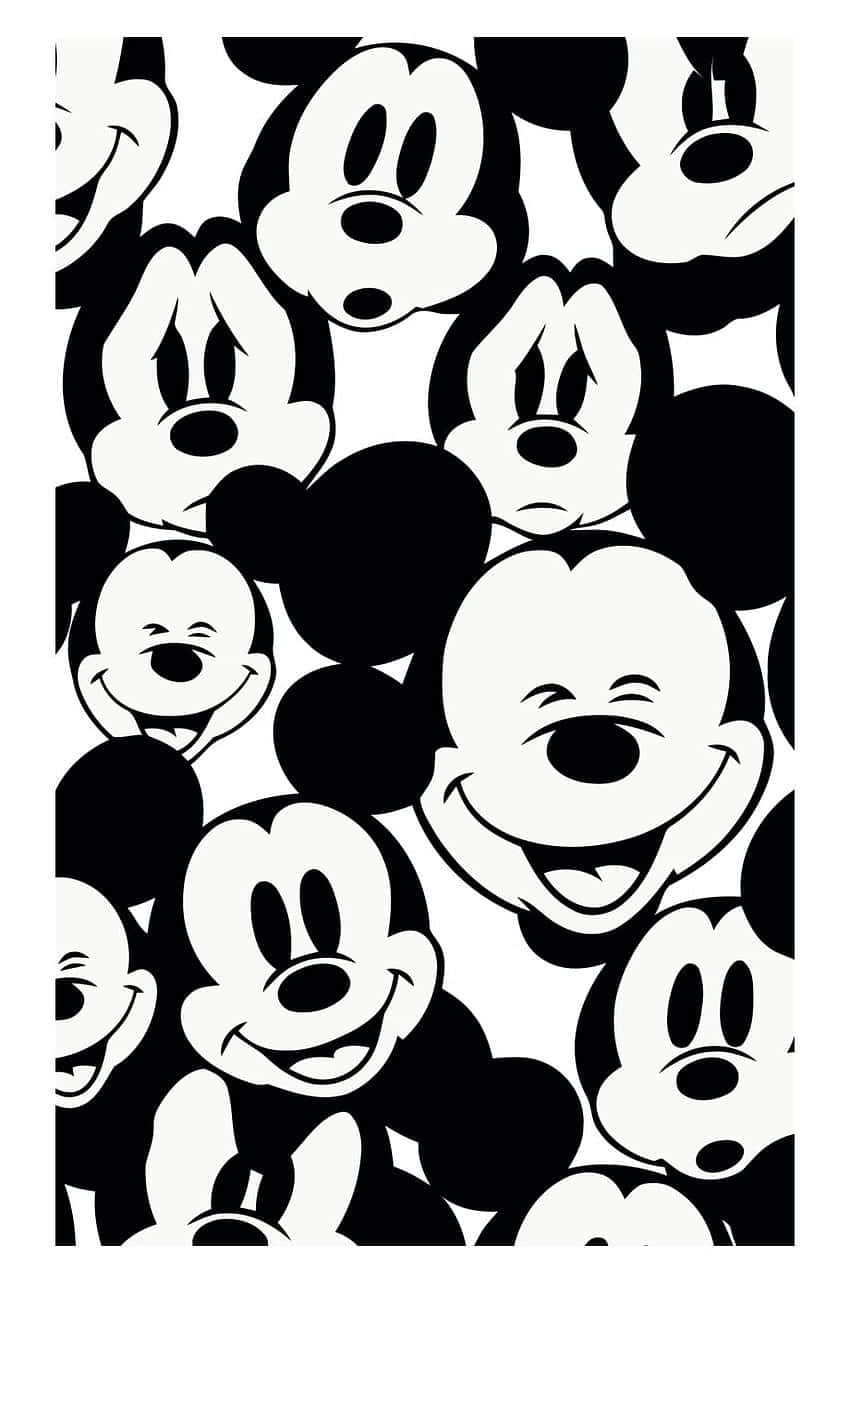 Imagenun Dispositivo Electrónico Negro Con Un Diseño Del Icónico Personaje De Disney, Mickey Mouse. Fondo de pantalla